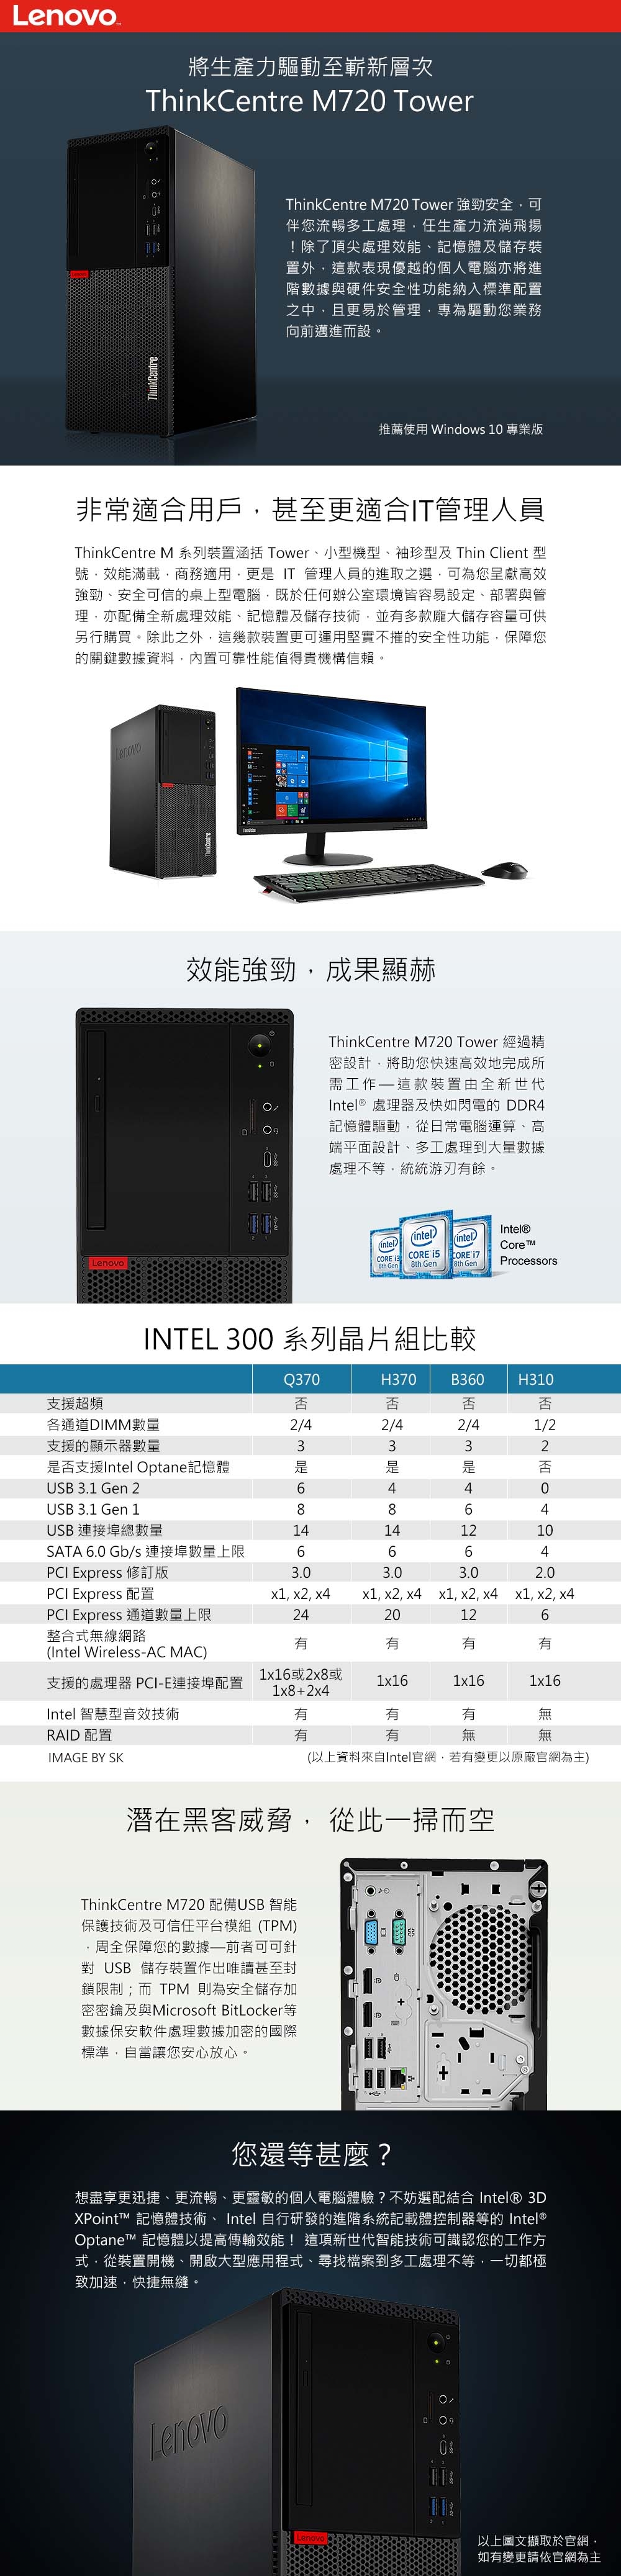 Lenovo M720t i5-9500/8GB/660P 512G+1TB/W10P